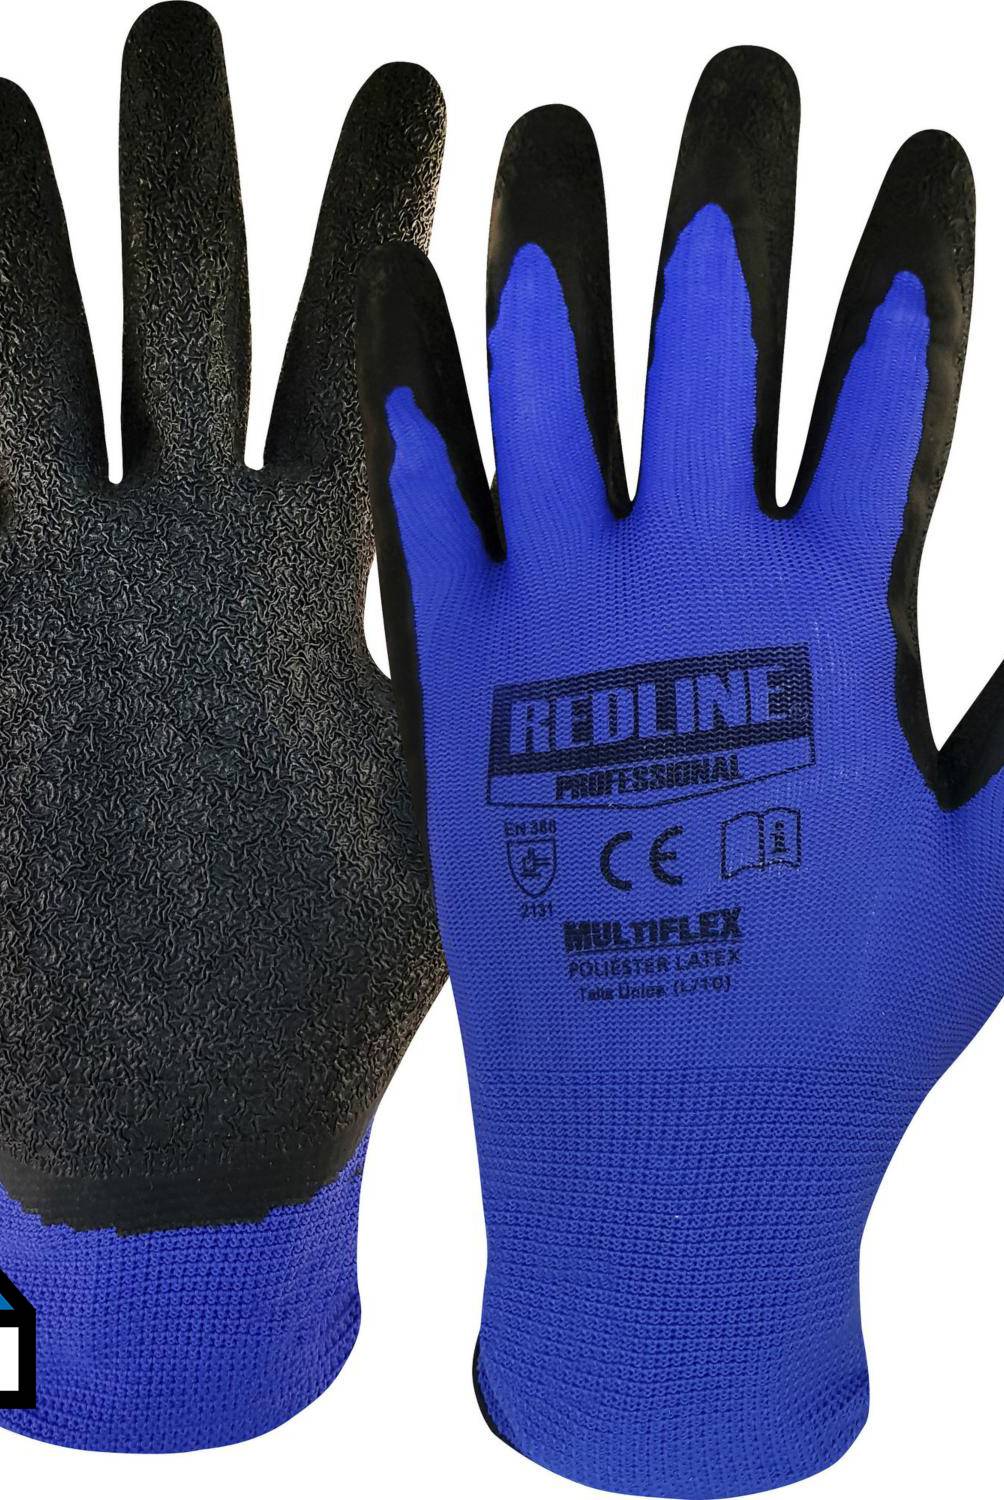 REDLINE - Pack 4 pares guantes multiflex multiuso látex amarillo negro